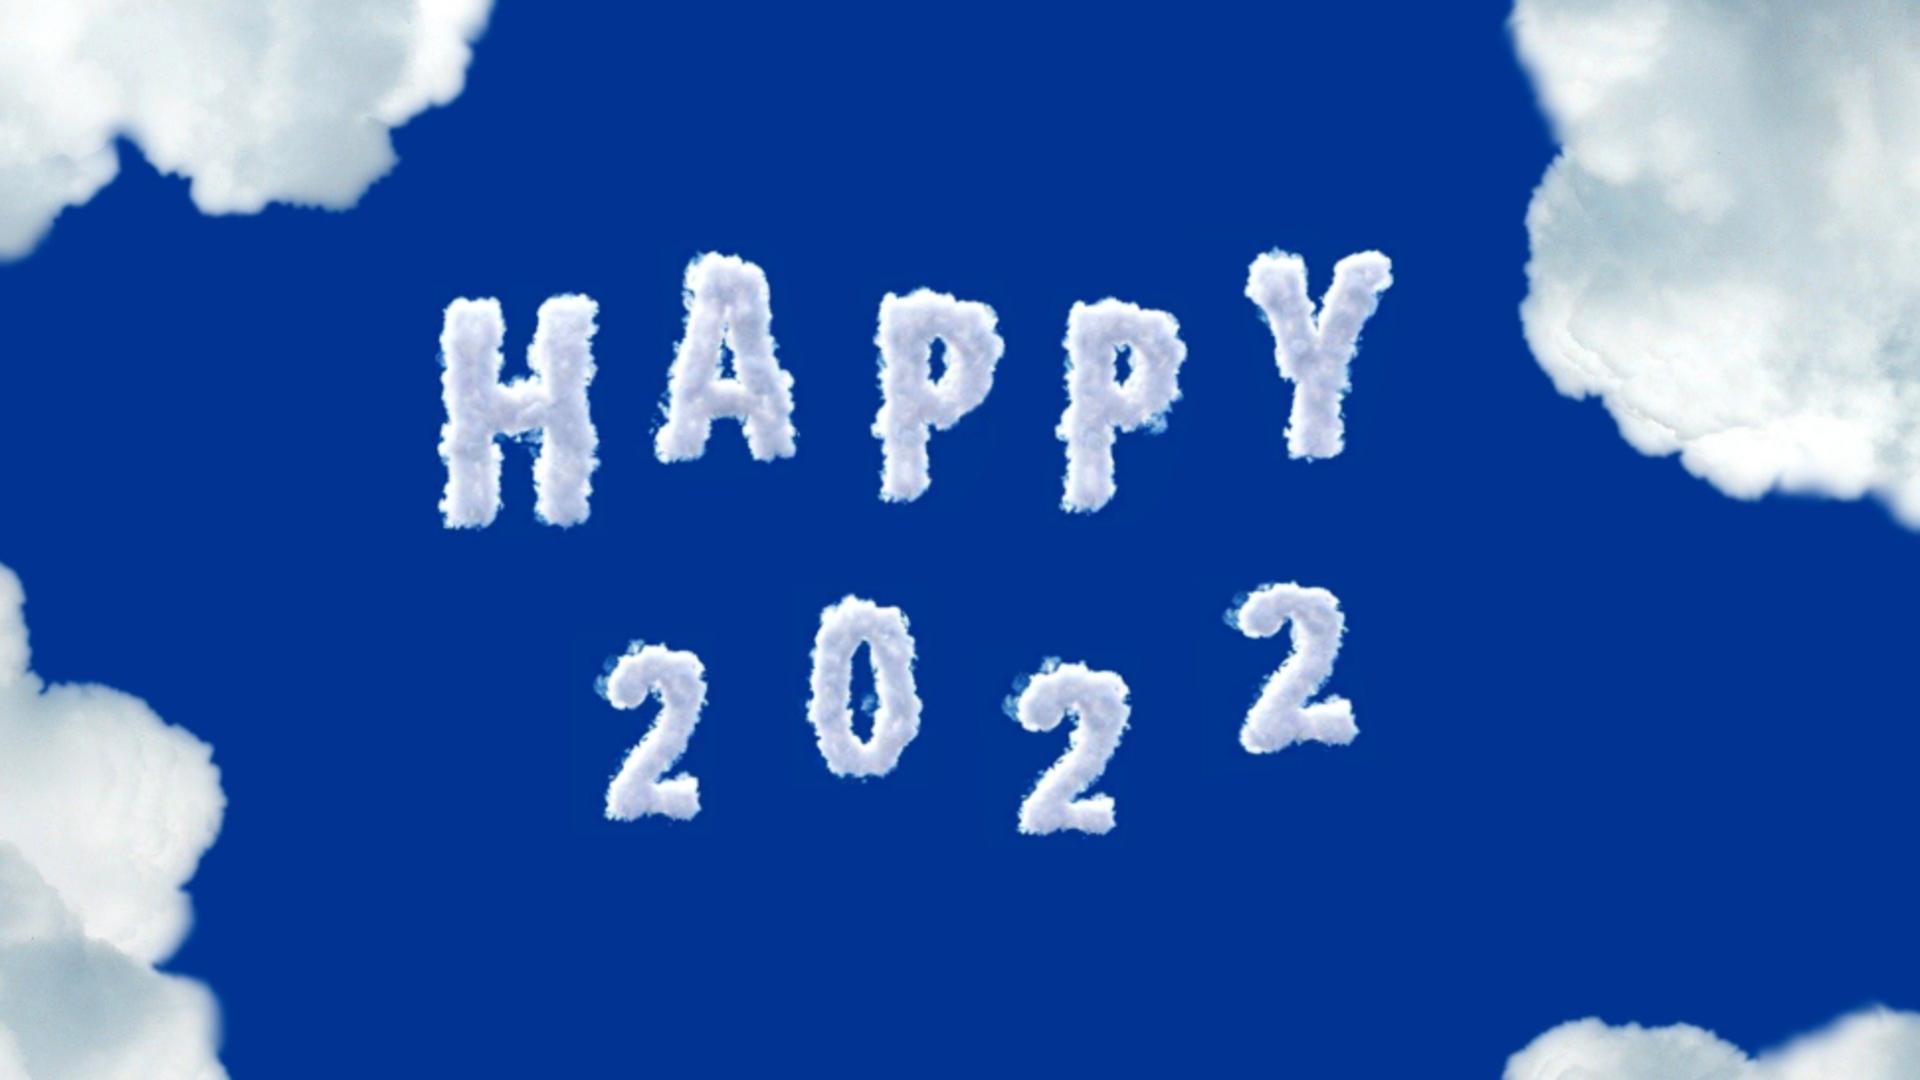 Revelion 2022